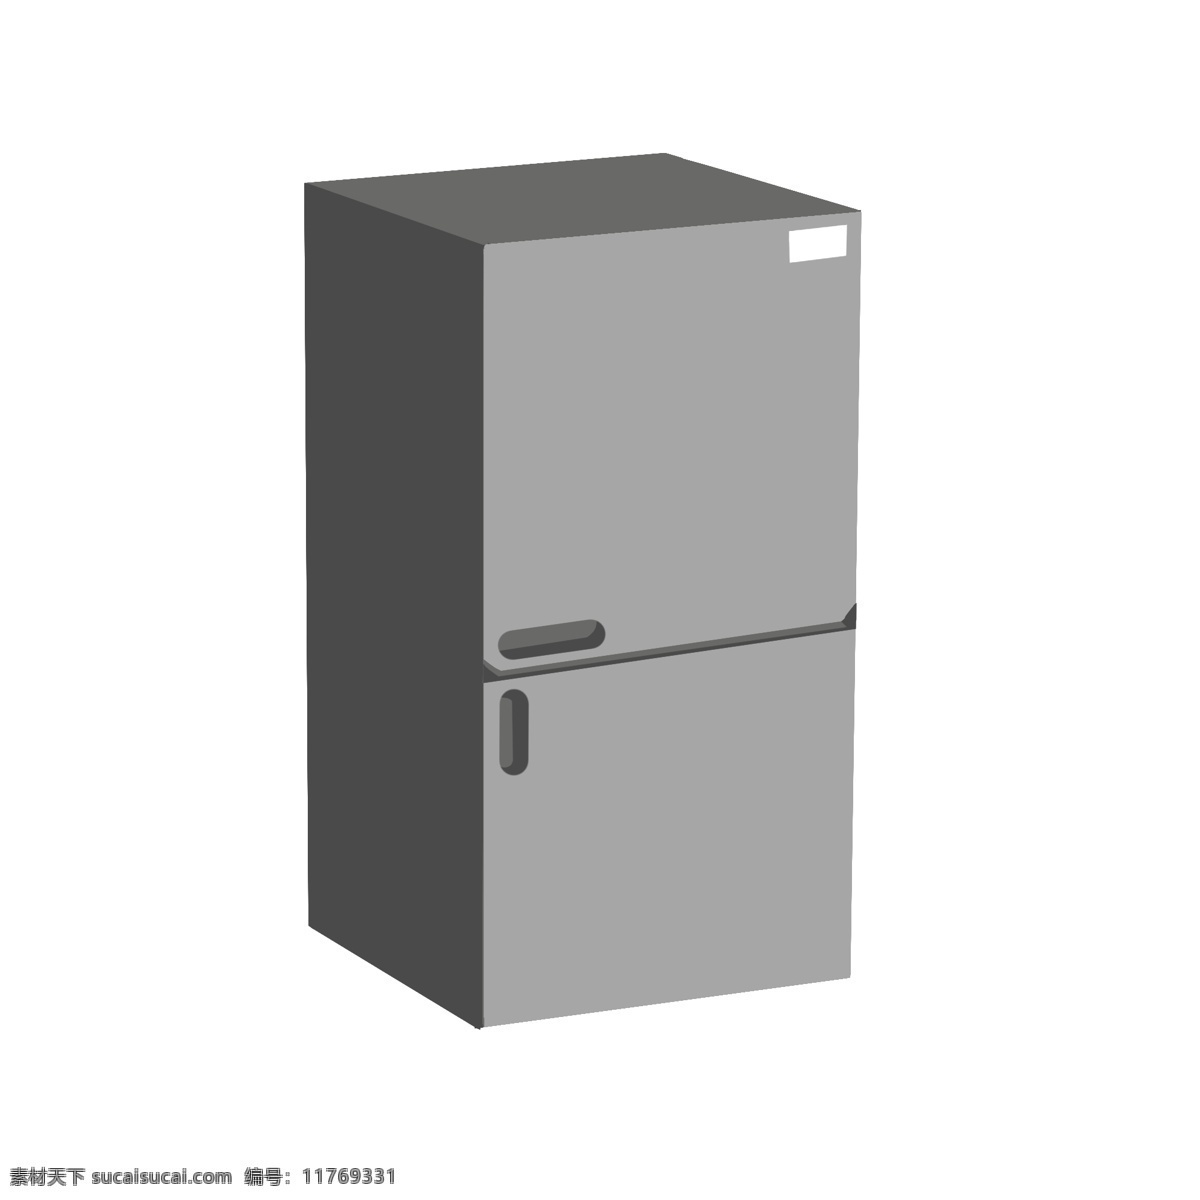 台 灰色 小 冰箱 插画 单开门冰箱 一台冰箱 灰色小冰箱 冰箱插画 小冰箱 家电 家具 冷冻